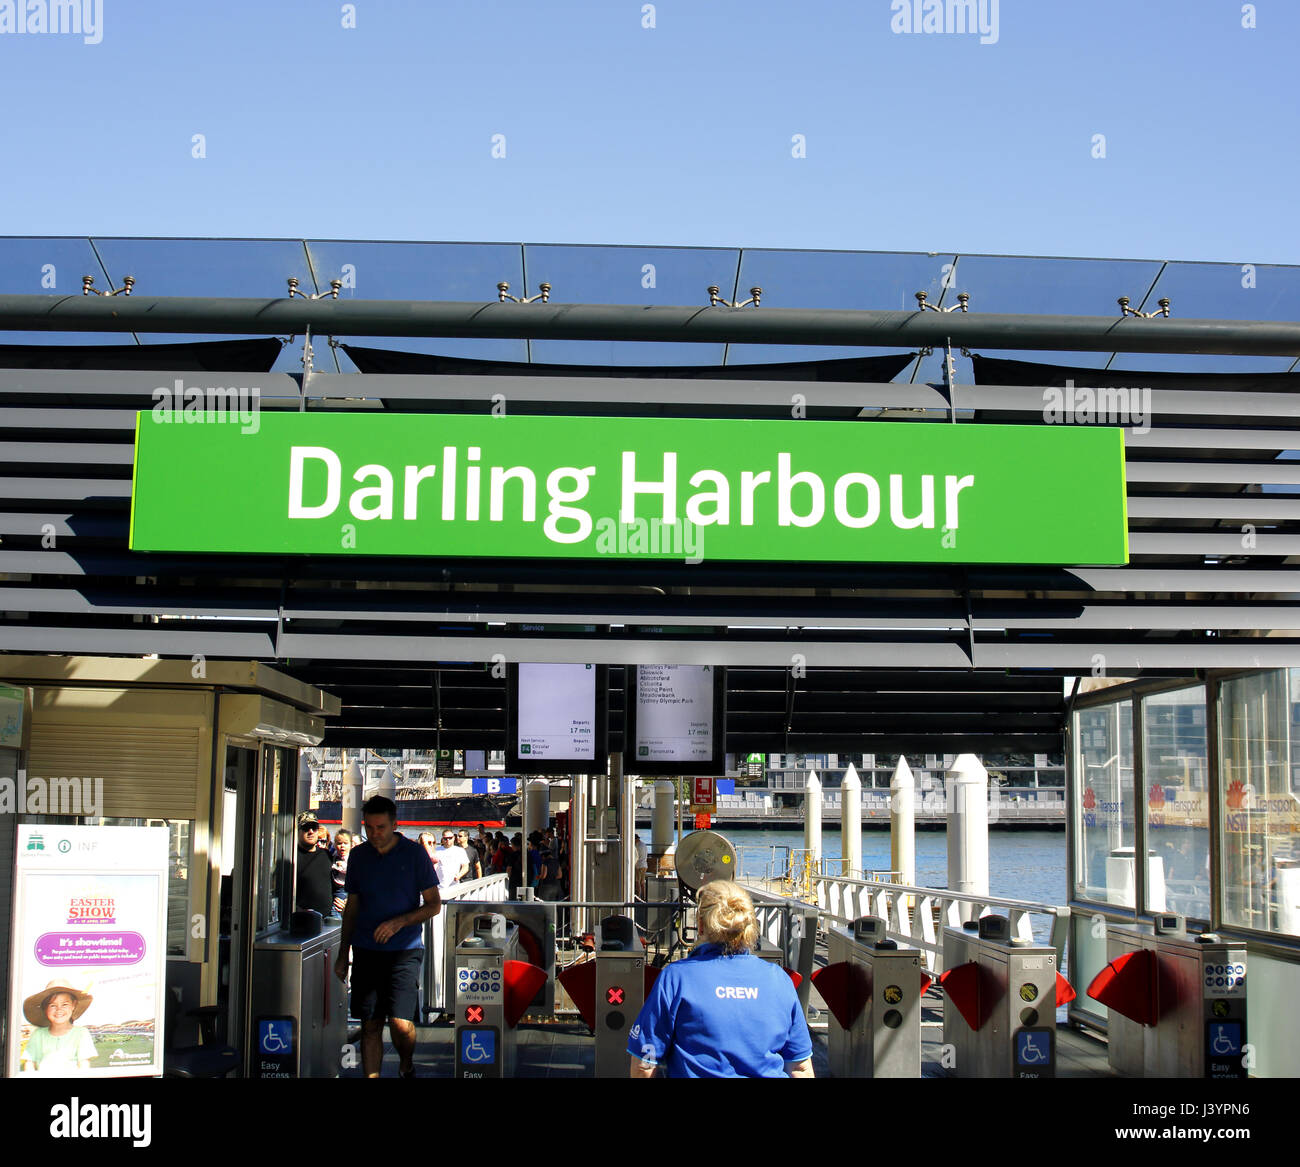 Darling Harbour segno oltre il molo del traghetto Foto Stock